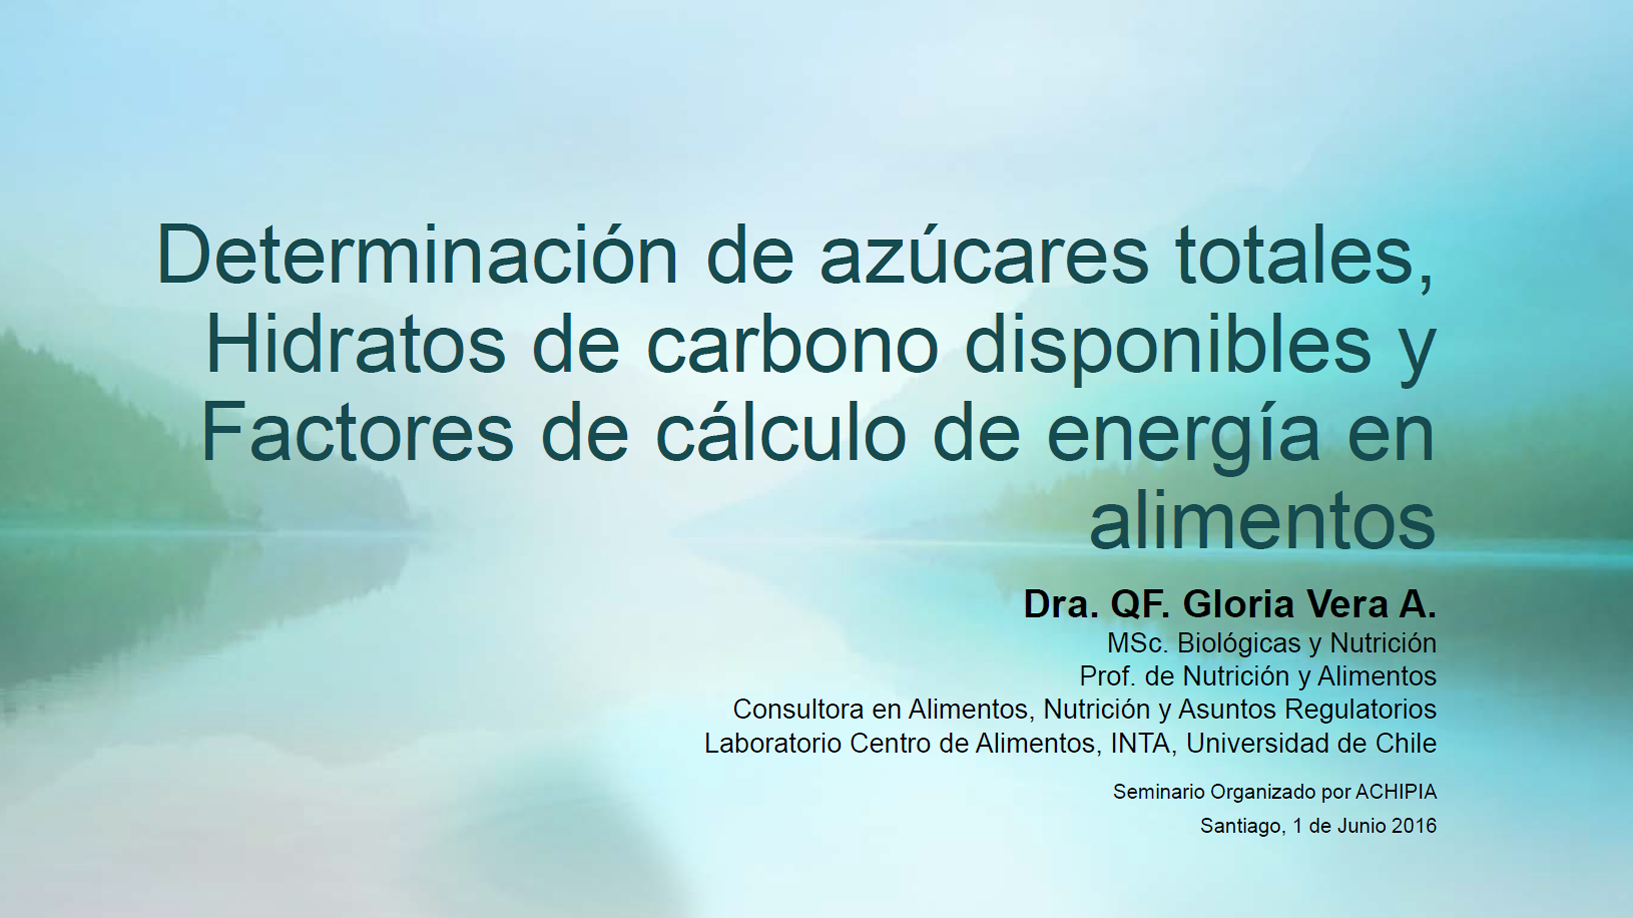 8-Métodos Azúcares Totales, H. de Carbono, Fáctores cálculo energía-Dra. Gloria Vera